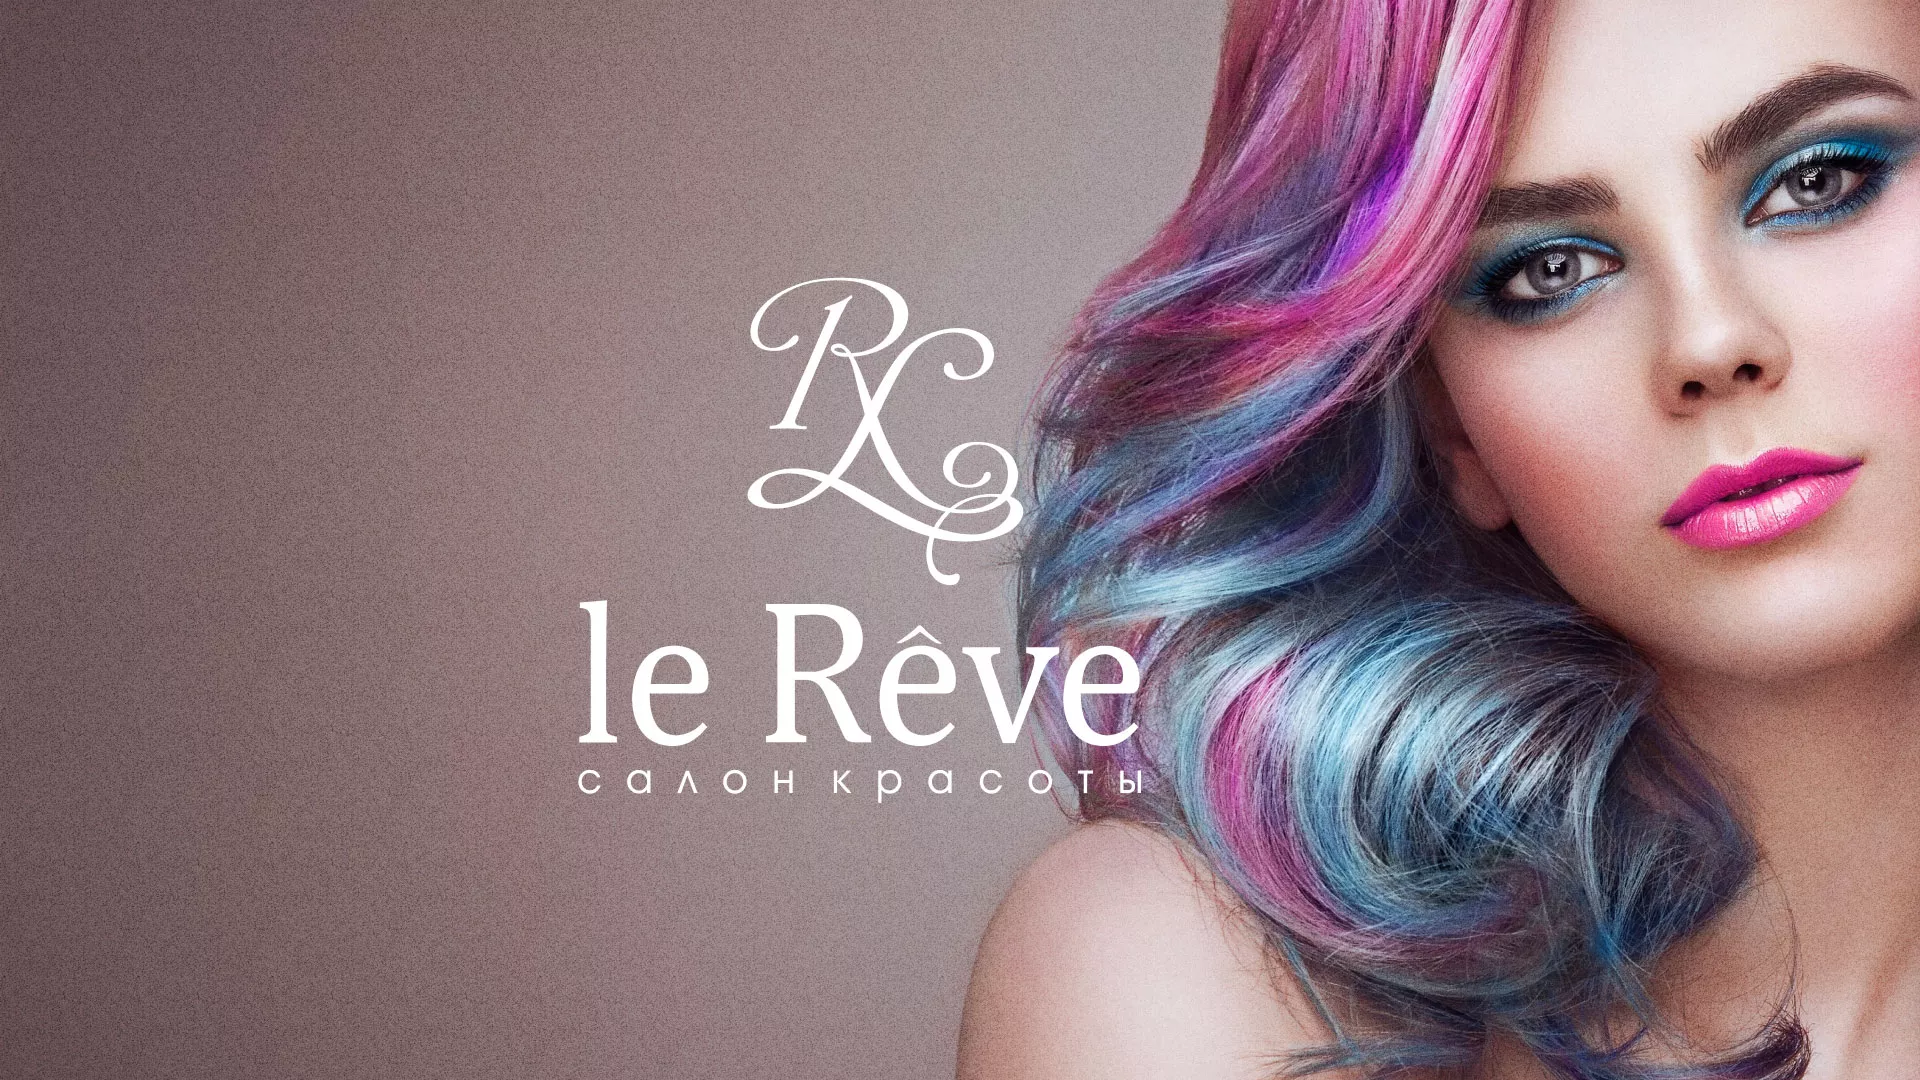 Создание сайта для салона красоты «Le Reve» в Славянске-на-Кубани